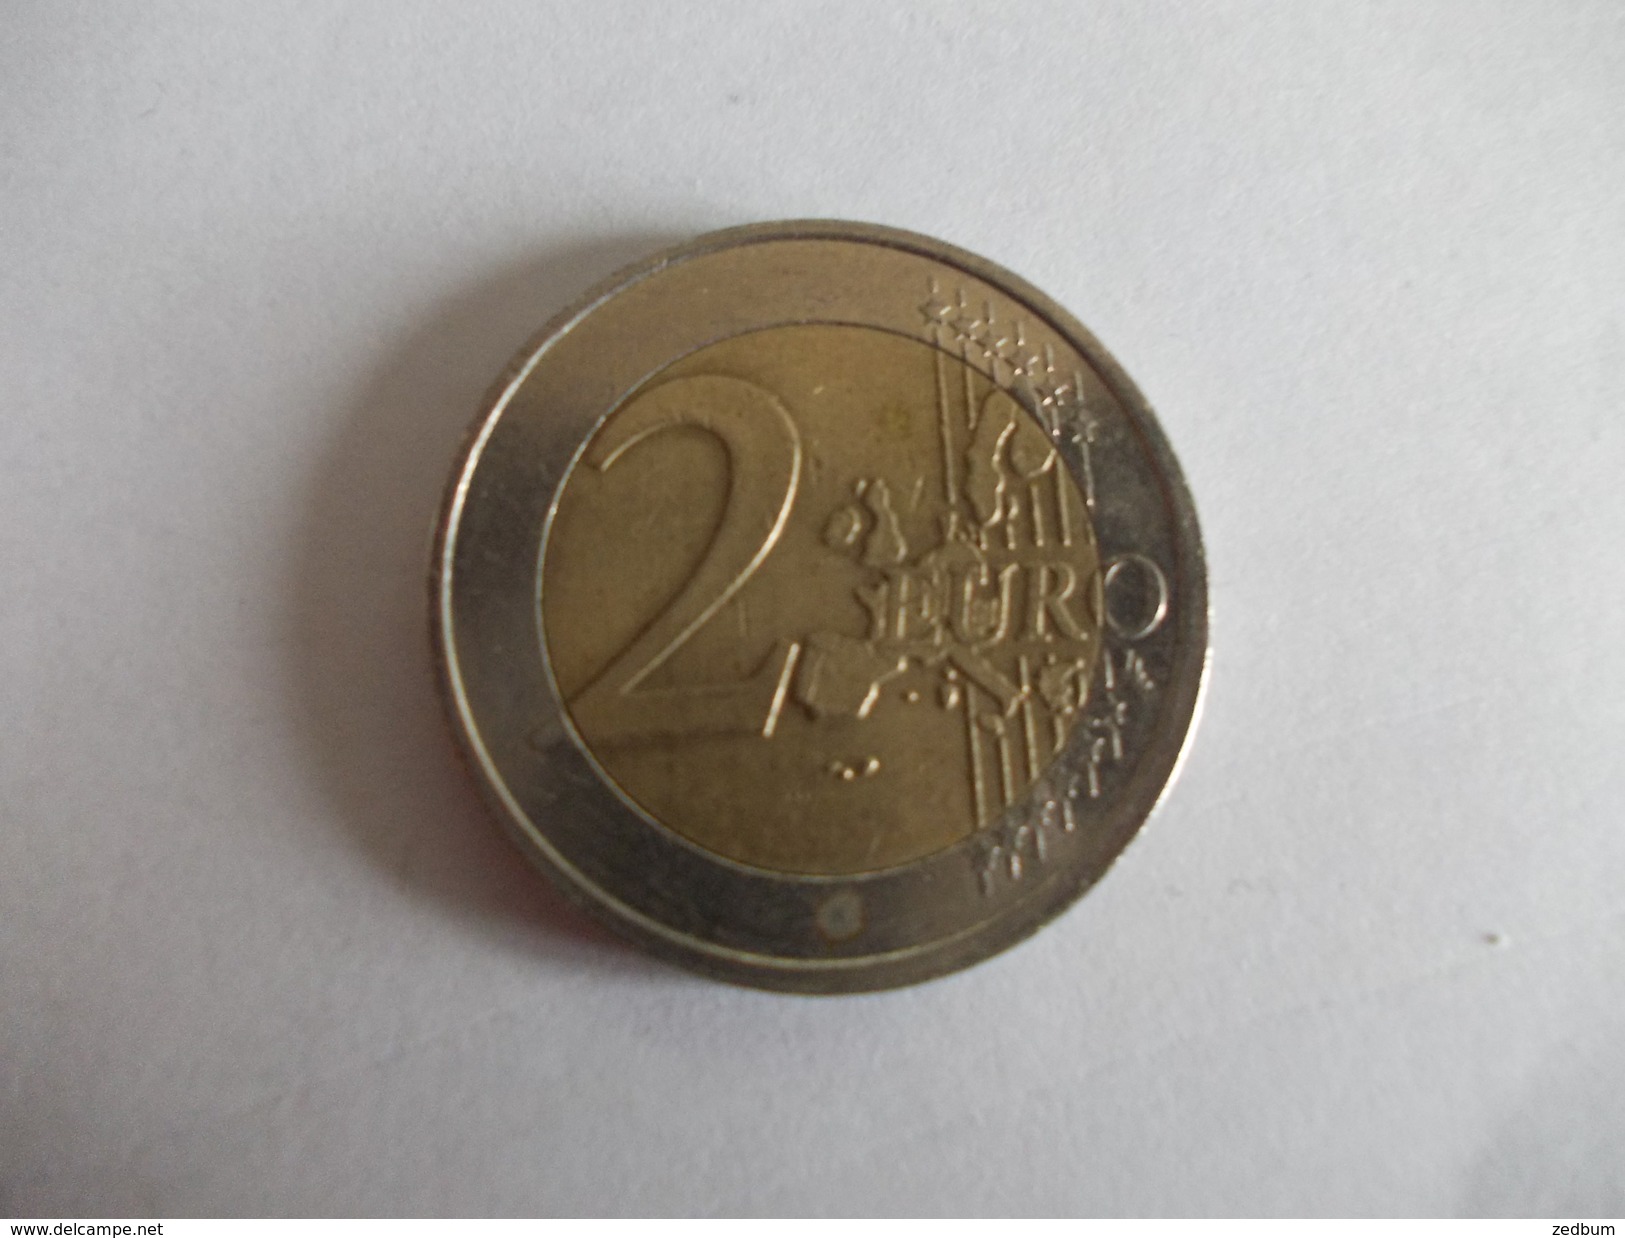 Monnaie Pièce De 2 Euros De Pays Bas Année 2002 Valeur Argus 3 &euro; - Pays-Bas